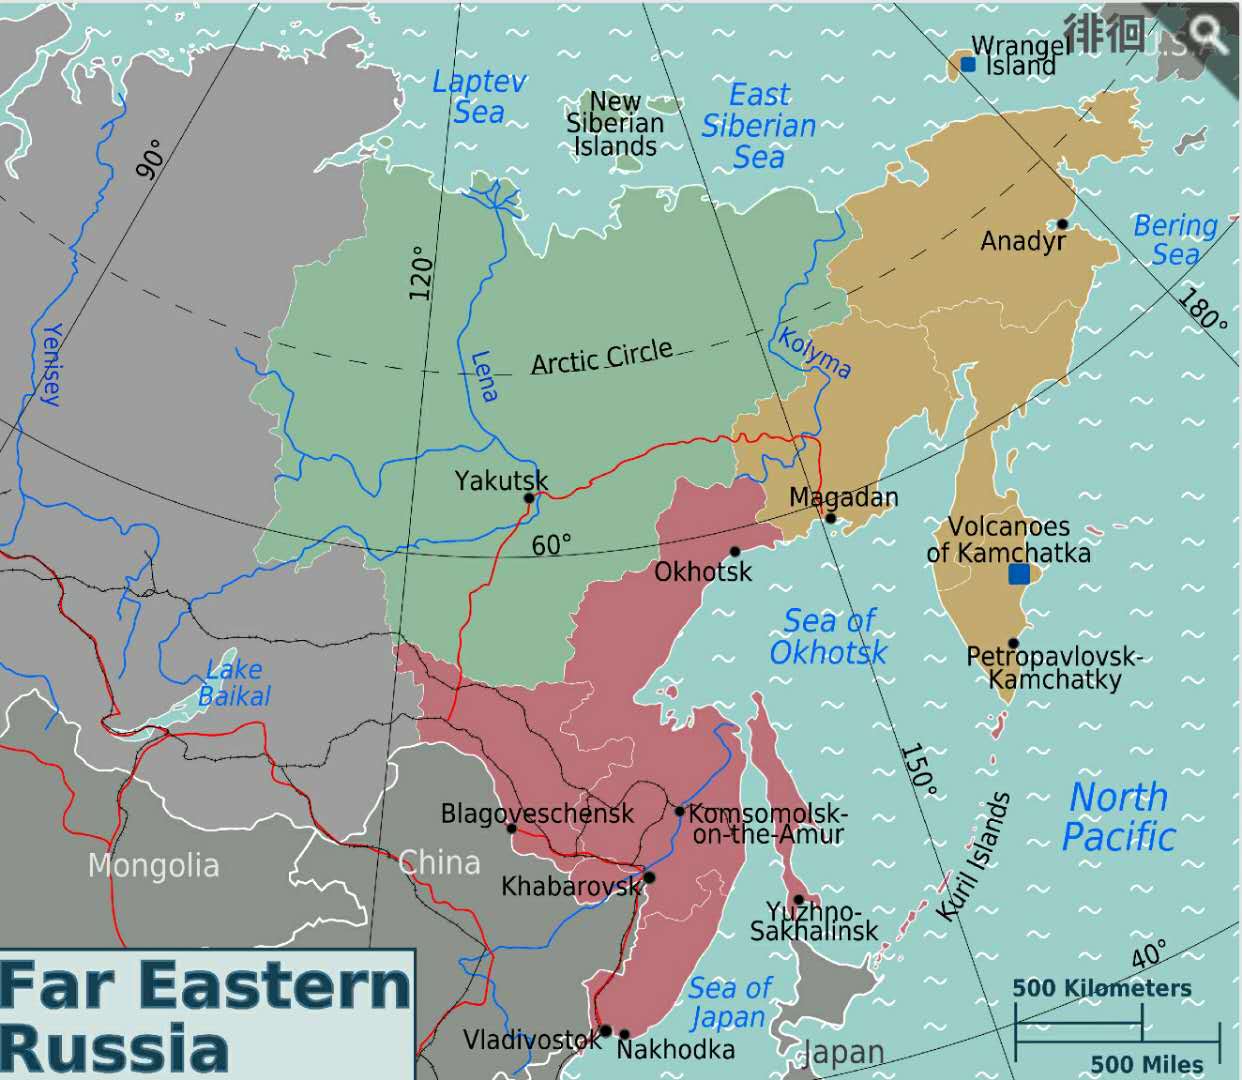 远东是俄罗斯的半条命?为何说俄罗斯不可能放弃远东地区?